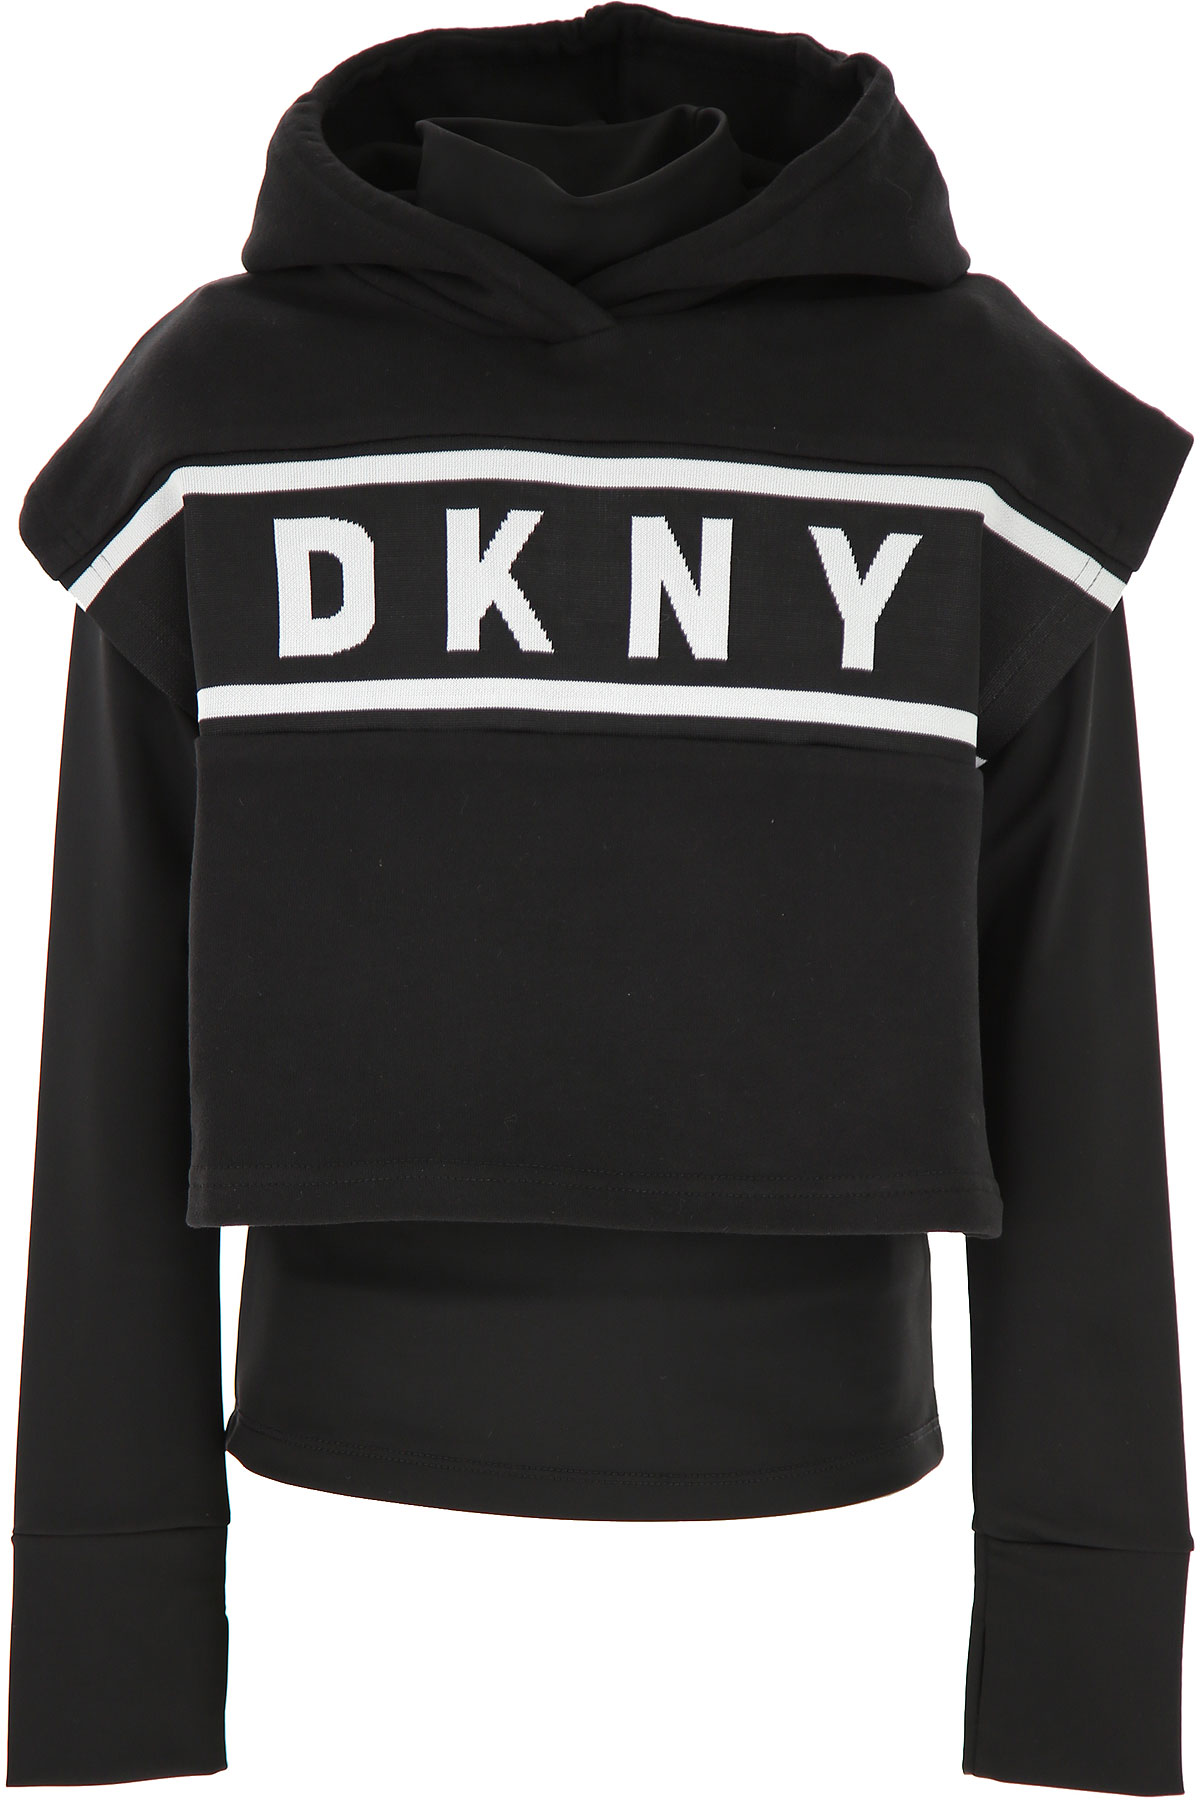 DKNY Kinder Sweatshirt & Kapuzenpullover für Mädchen Günstig im Sale, Schwarz, Baumwolle, 2017, 10Y 12Y 14Y 16Y 8Y